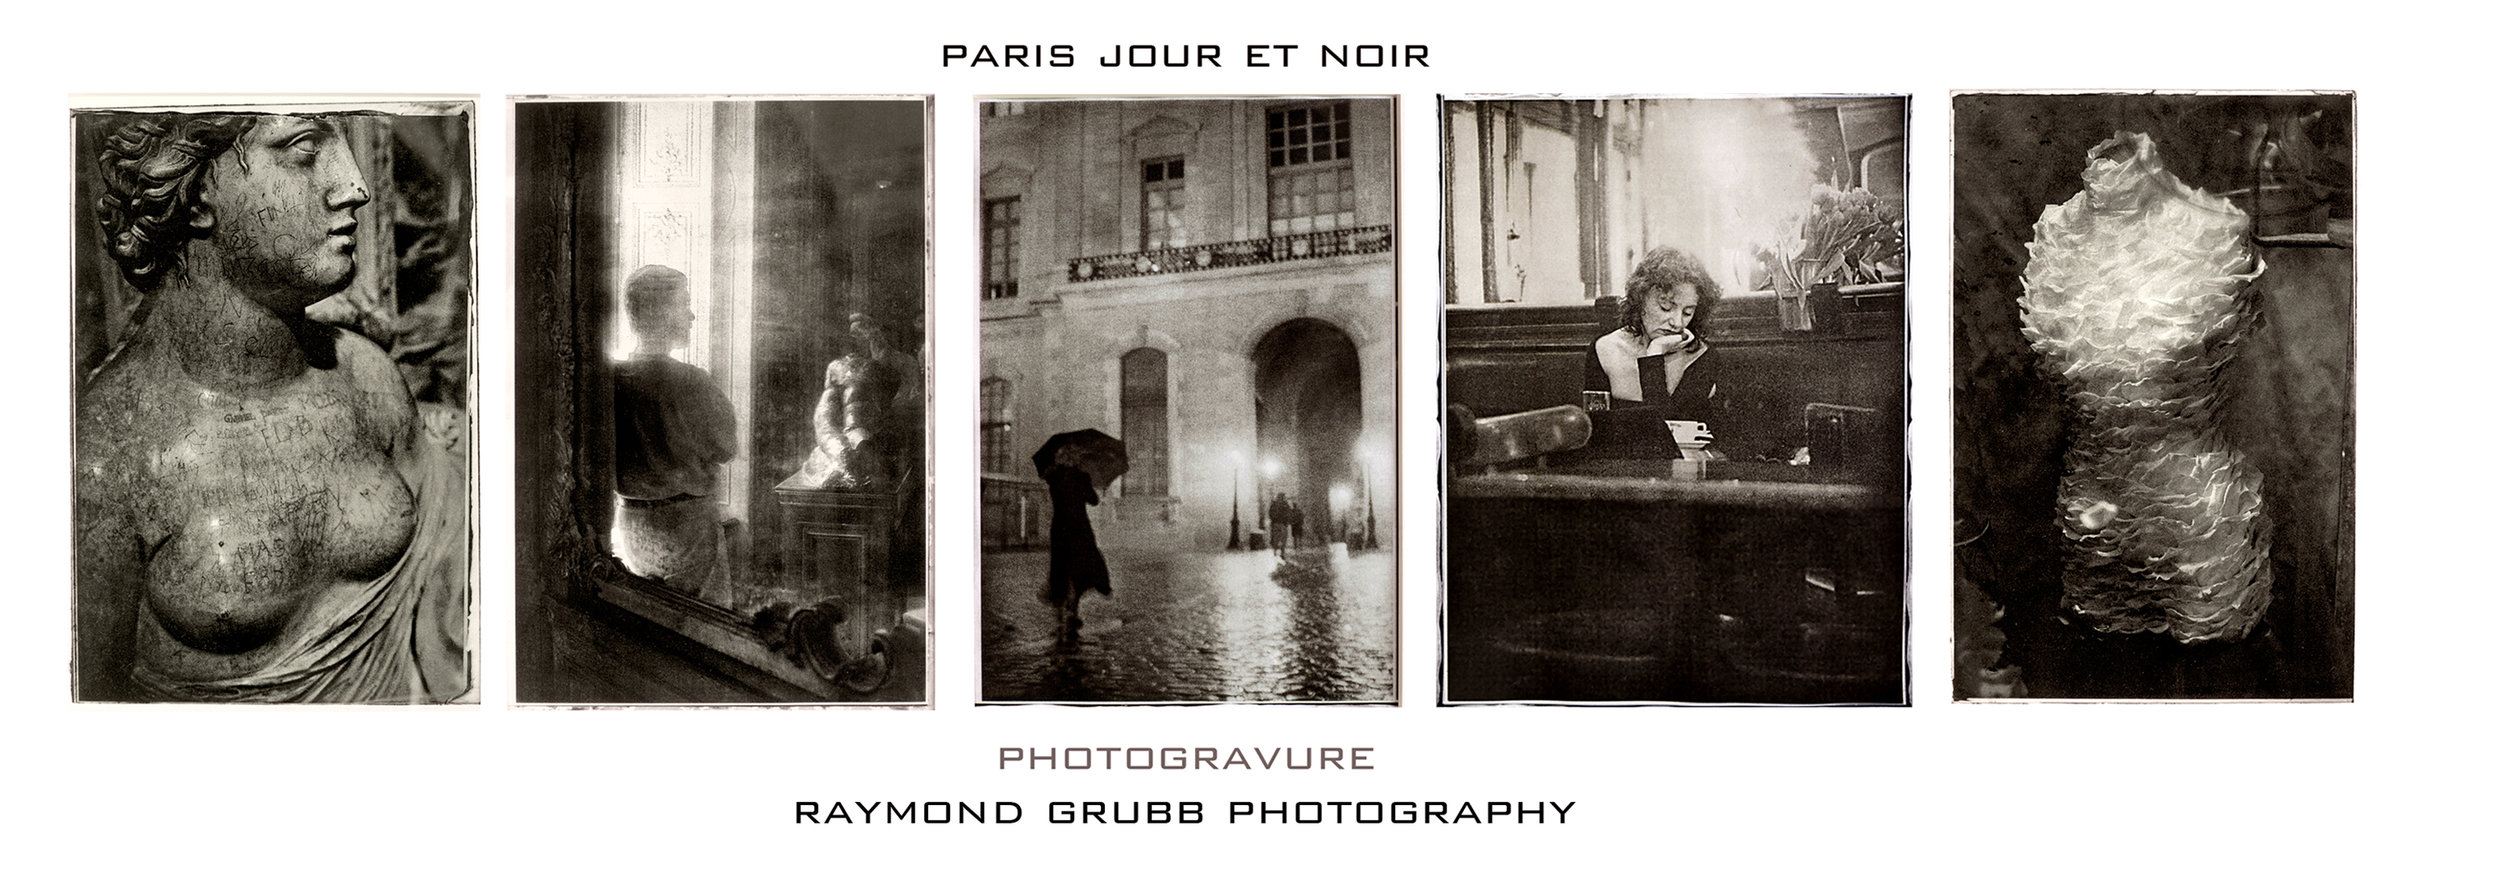 Paris Jour et Noir photogravure card